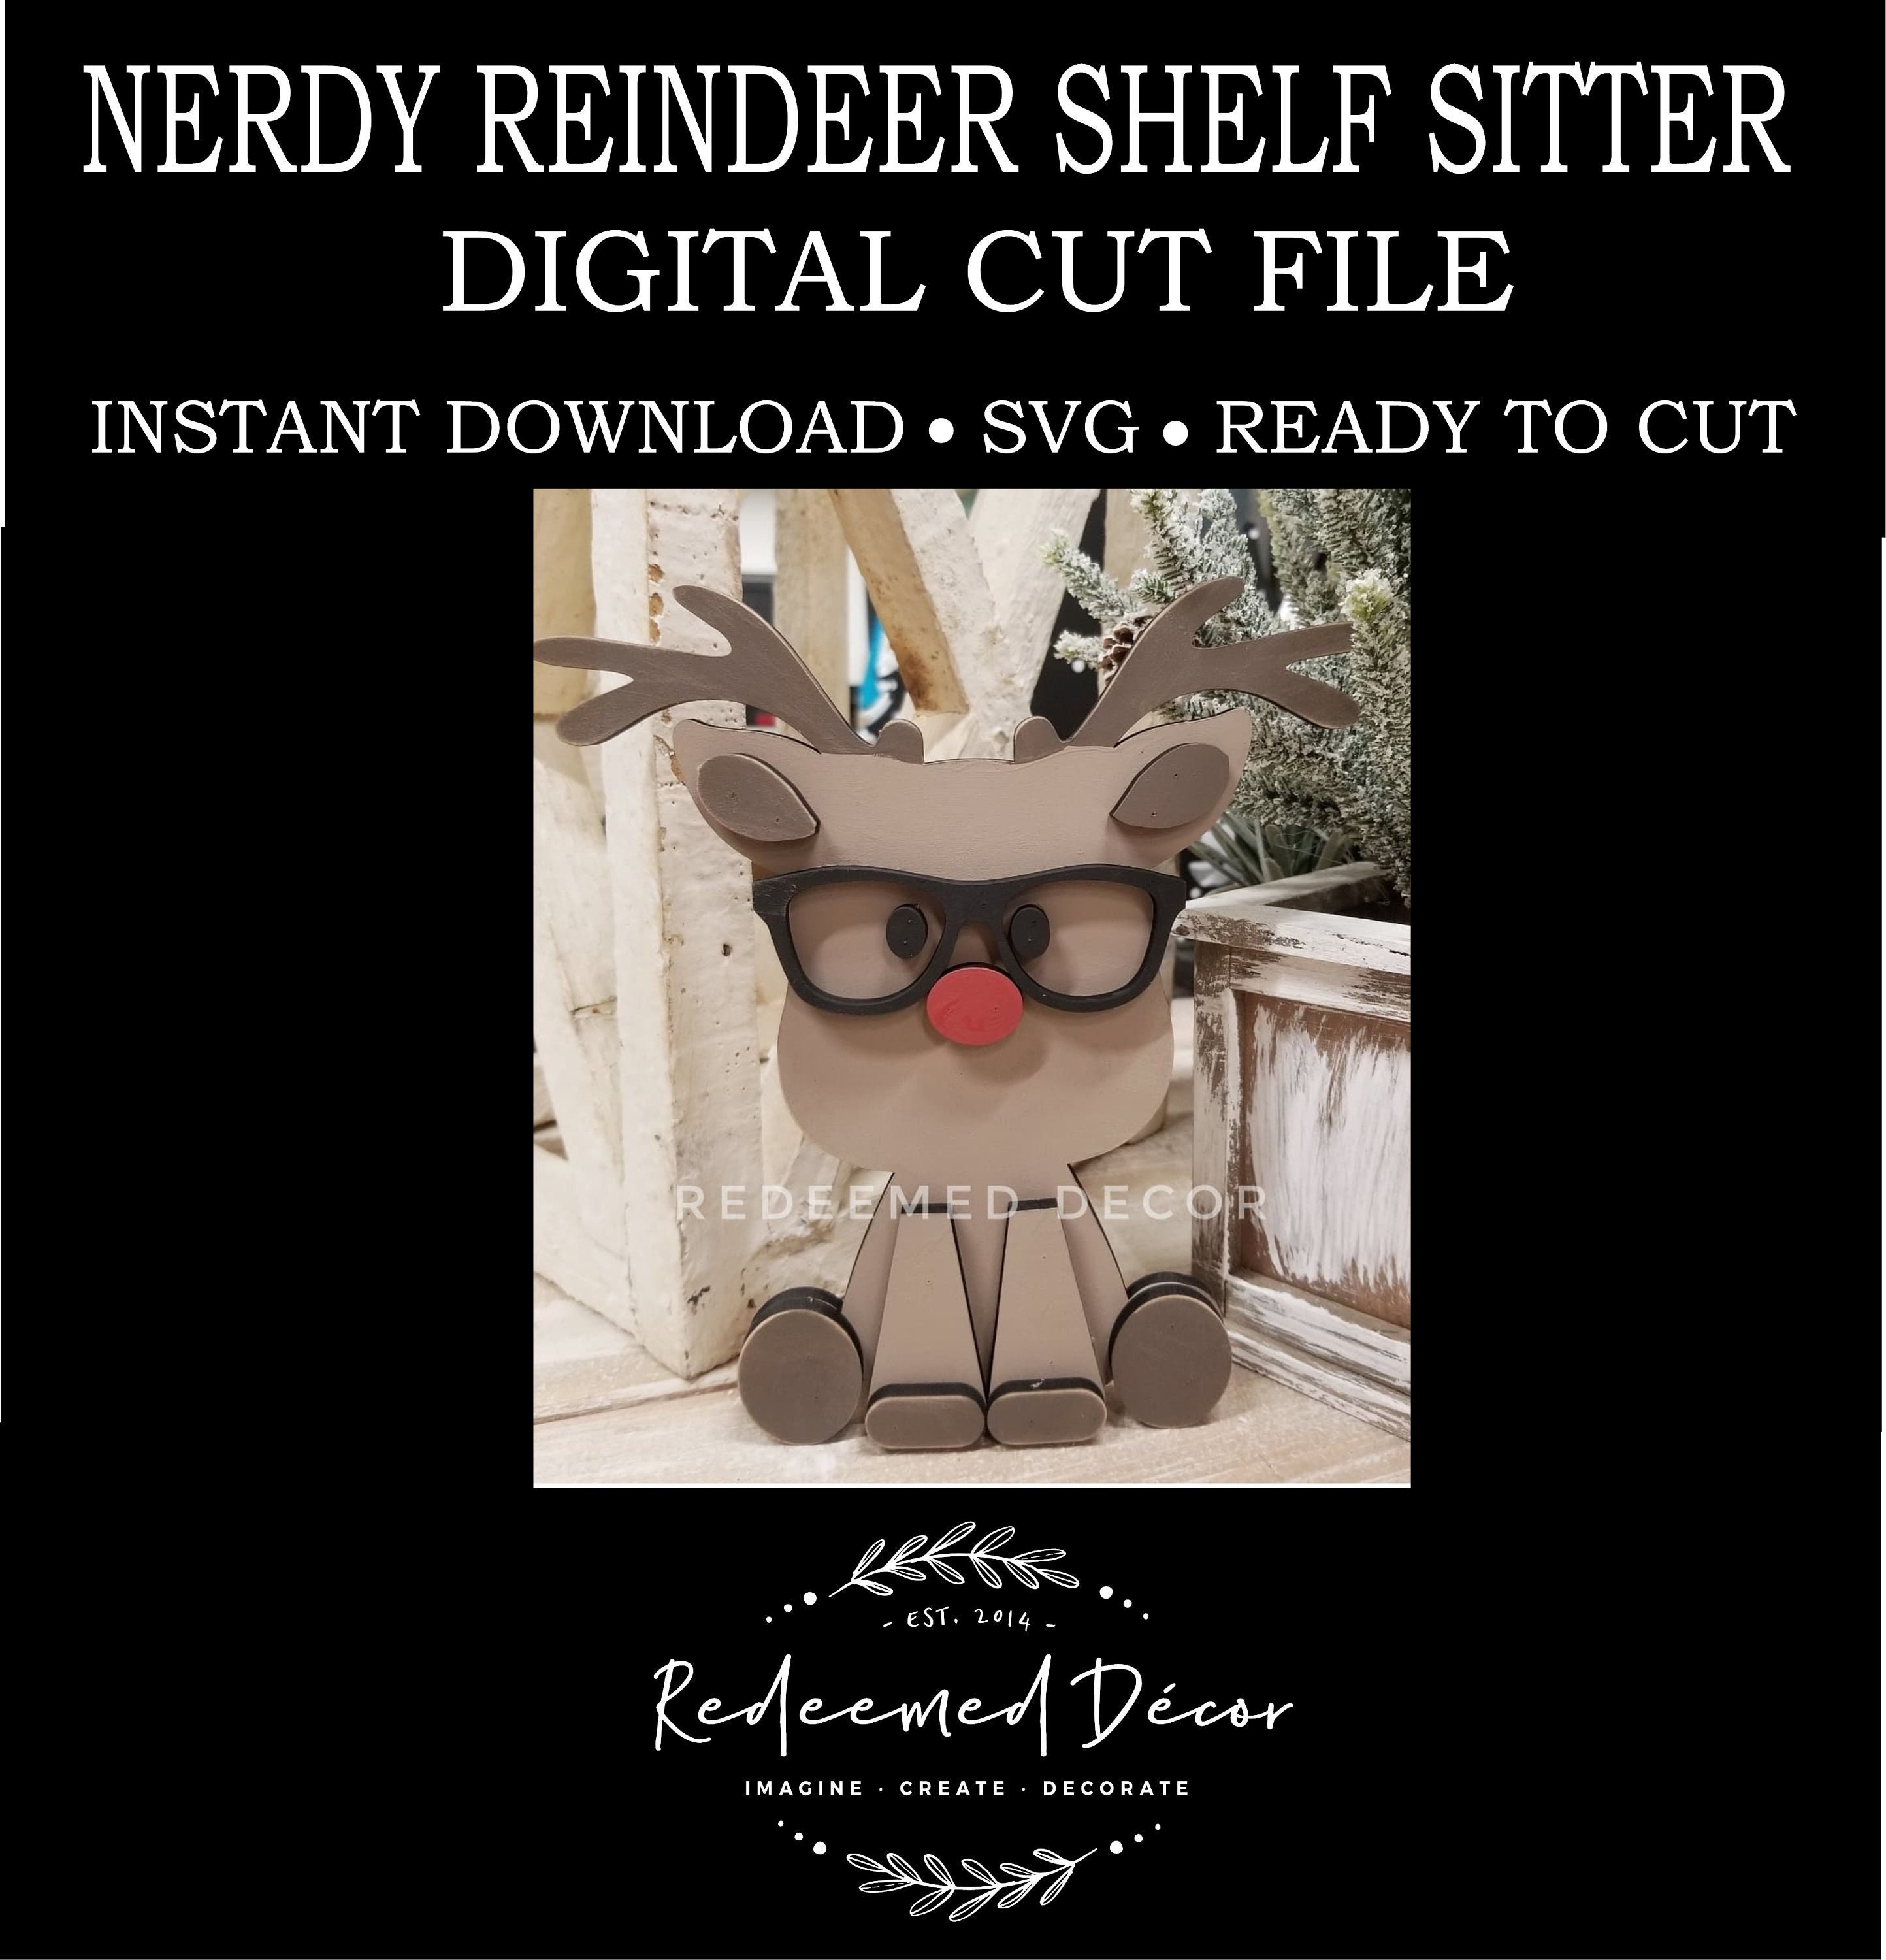 Reindeer Craft Kitcardstock Paper Craft for Kids Christmas Crafts Kids  Crafts 